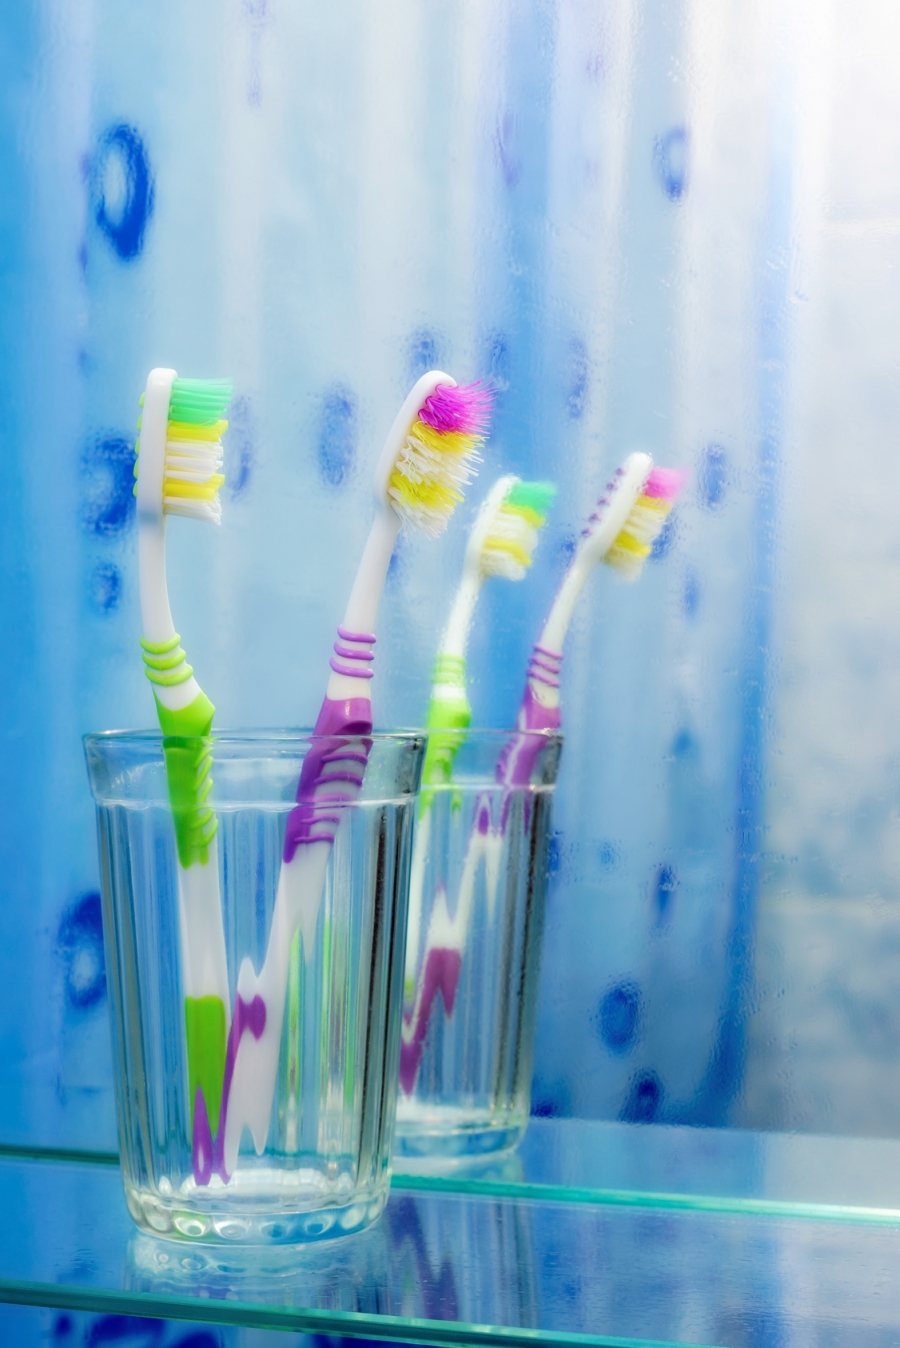 Auf den meisten Zahnbürsten herrscht für Bakterien ein prima Klima. Einmal pro Woche, sollte man sie daher reinigen.